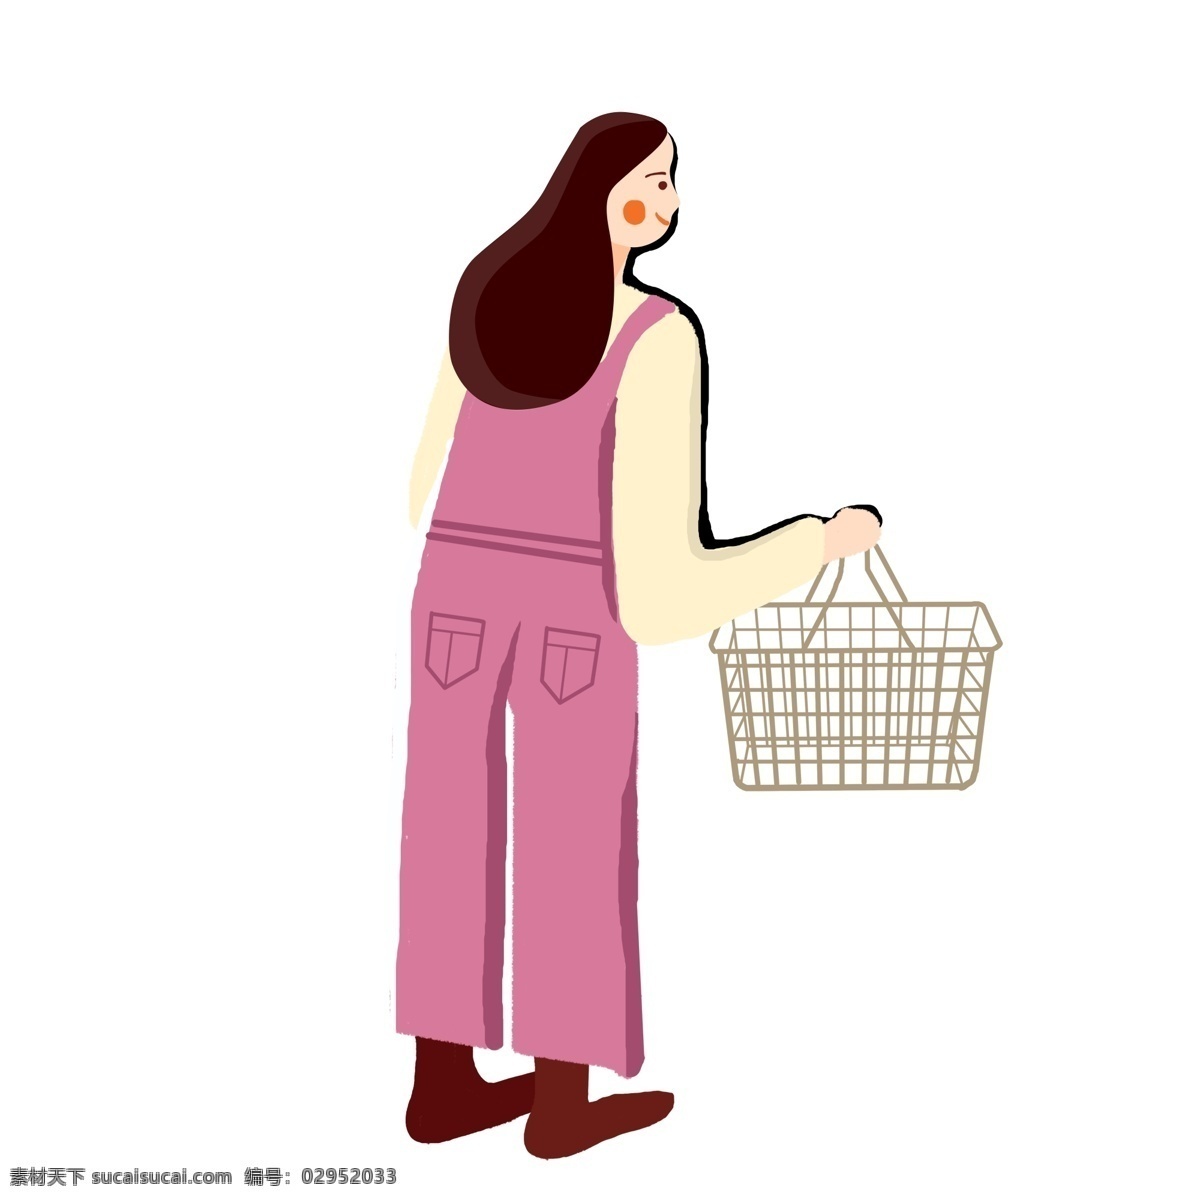 提 购物篮 购物 女孩子 商用 元素 卡通 女性 人物 手绘